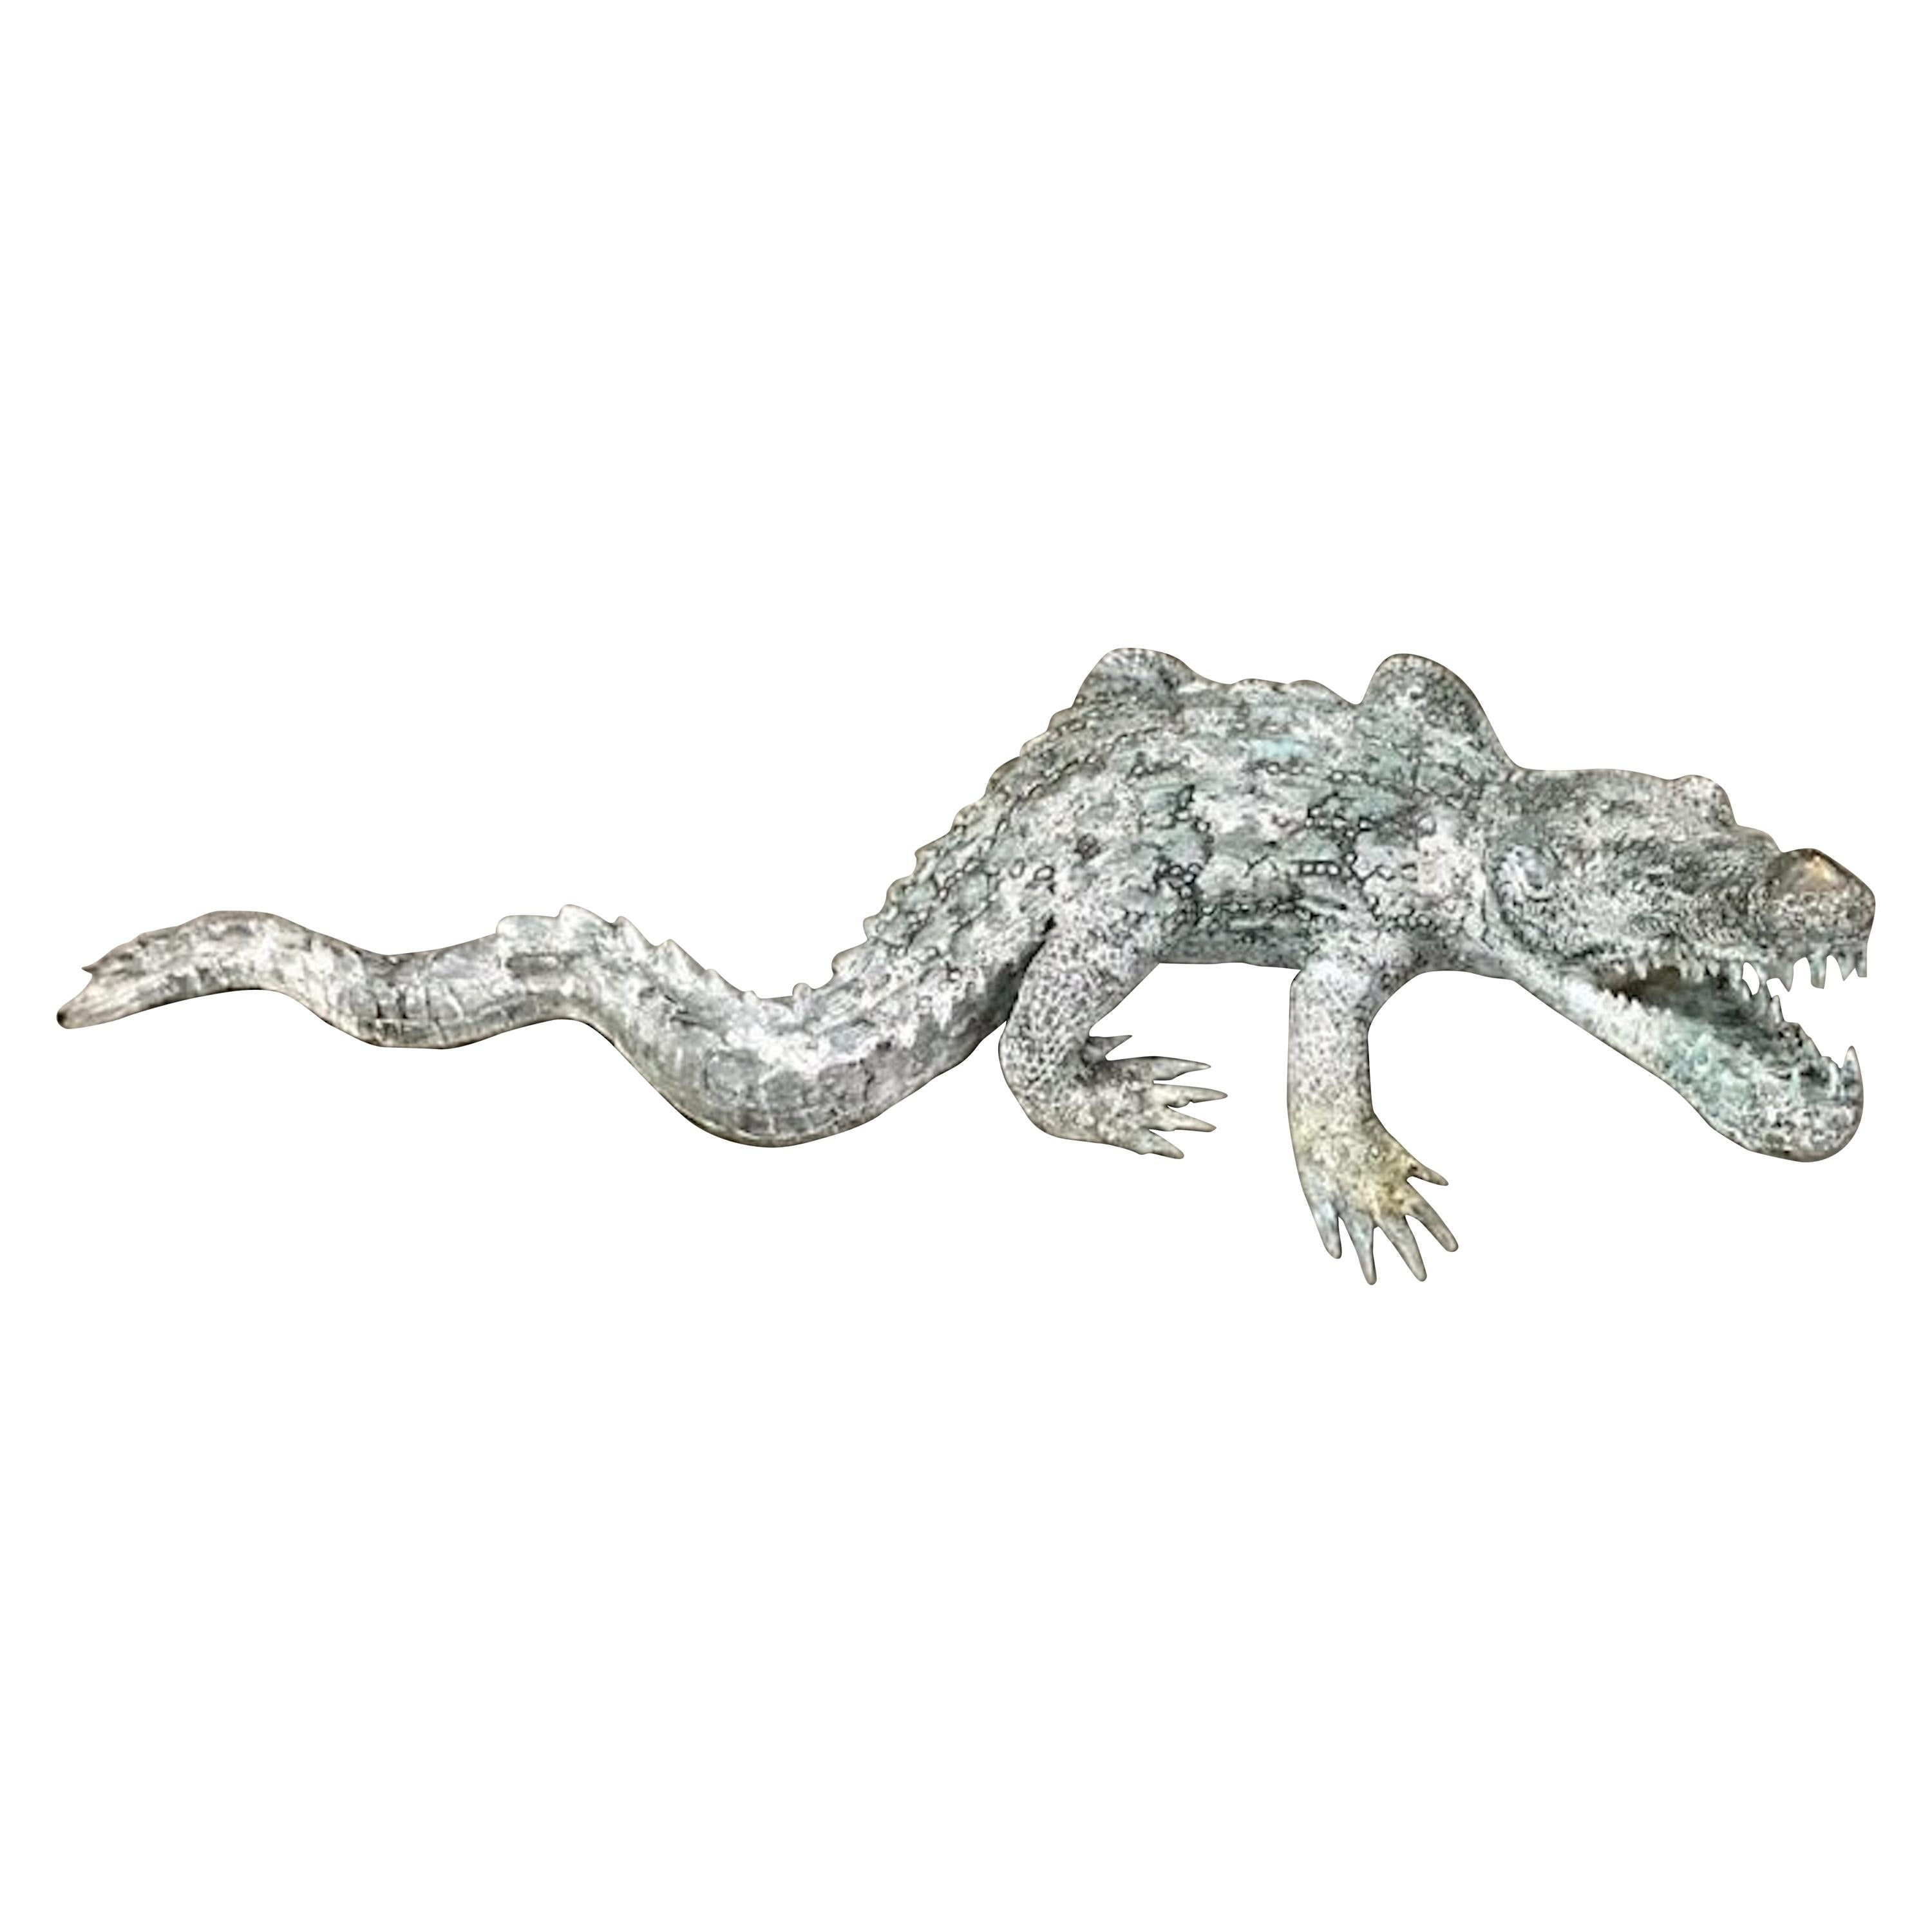 Cast Bronze Garden Sculpture of an Alligator For Sale